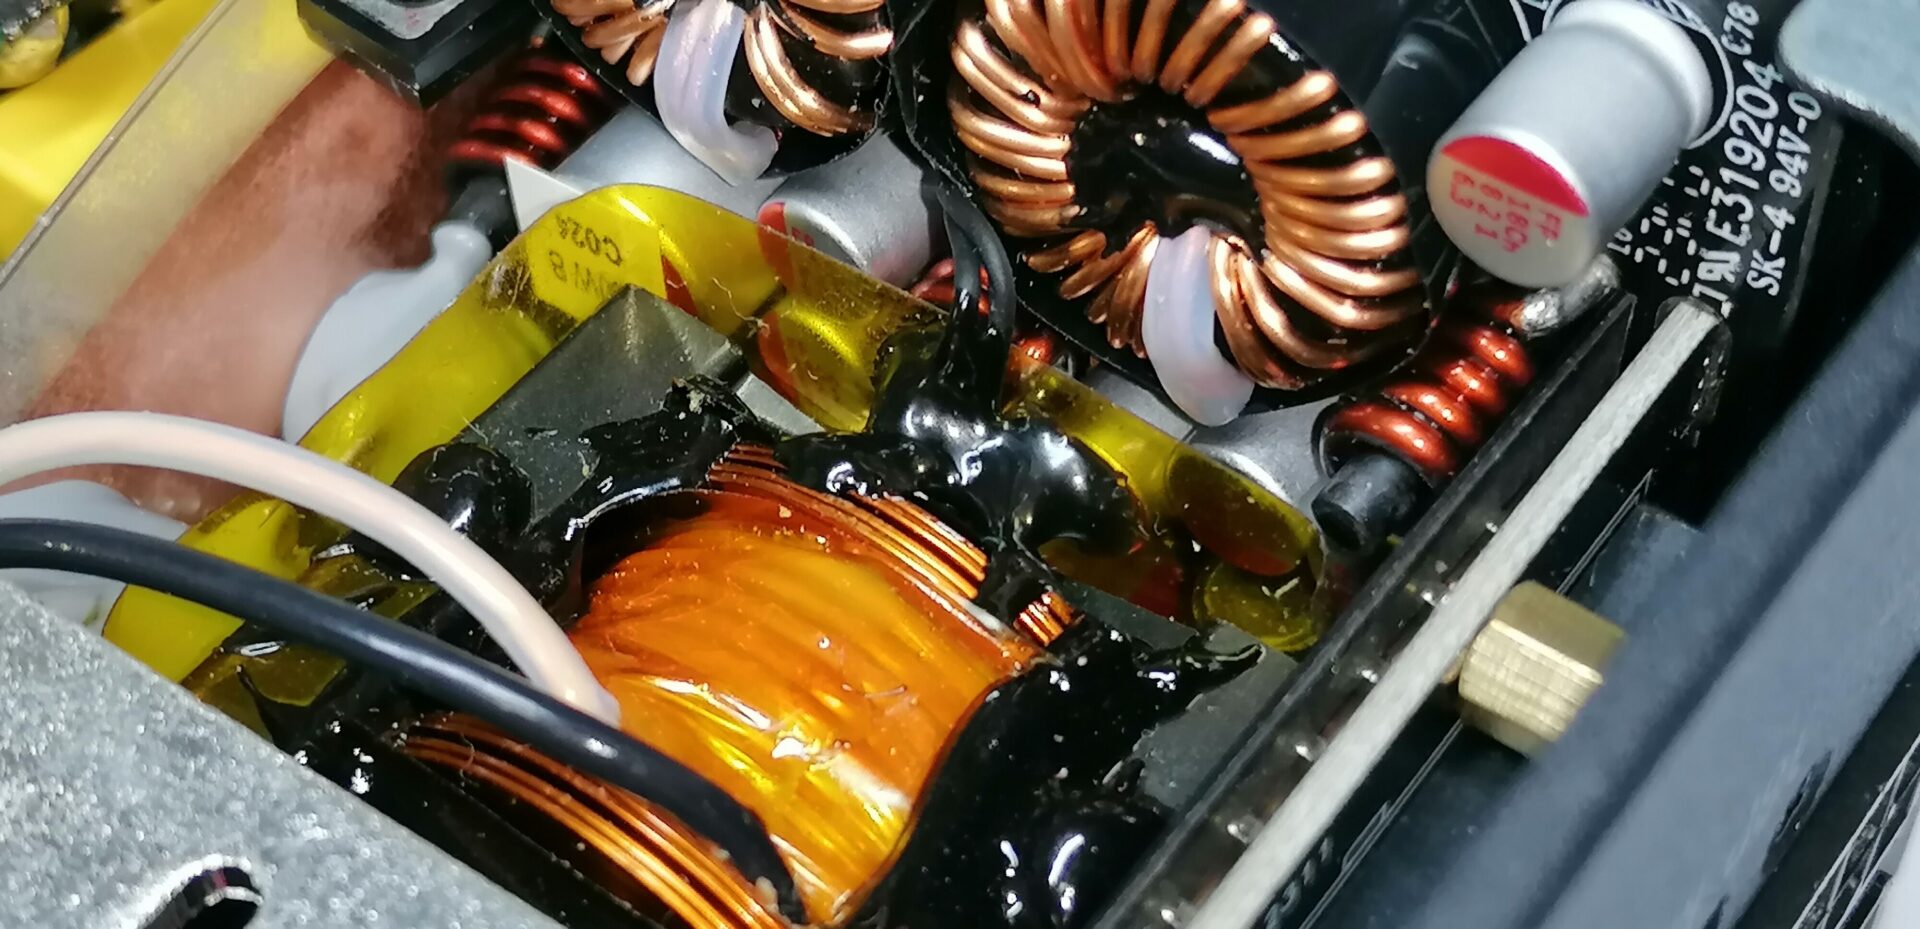 Cooler Master V850 SFX Gold